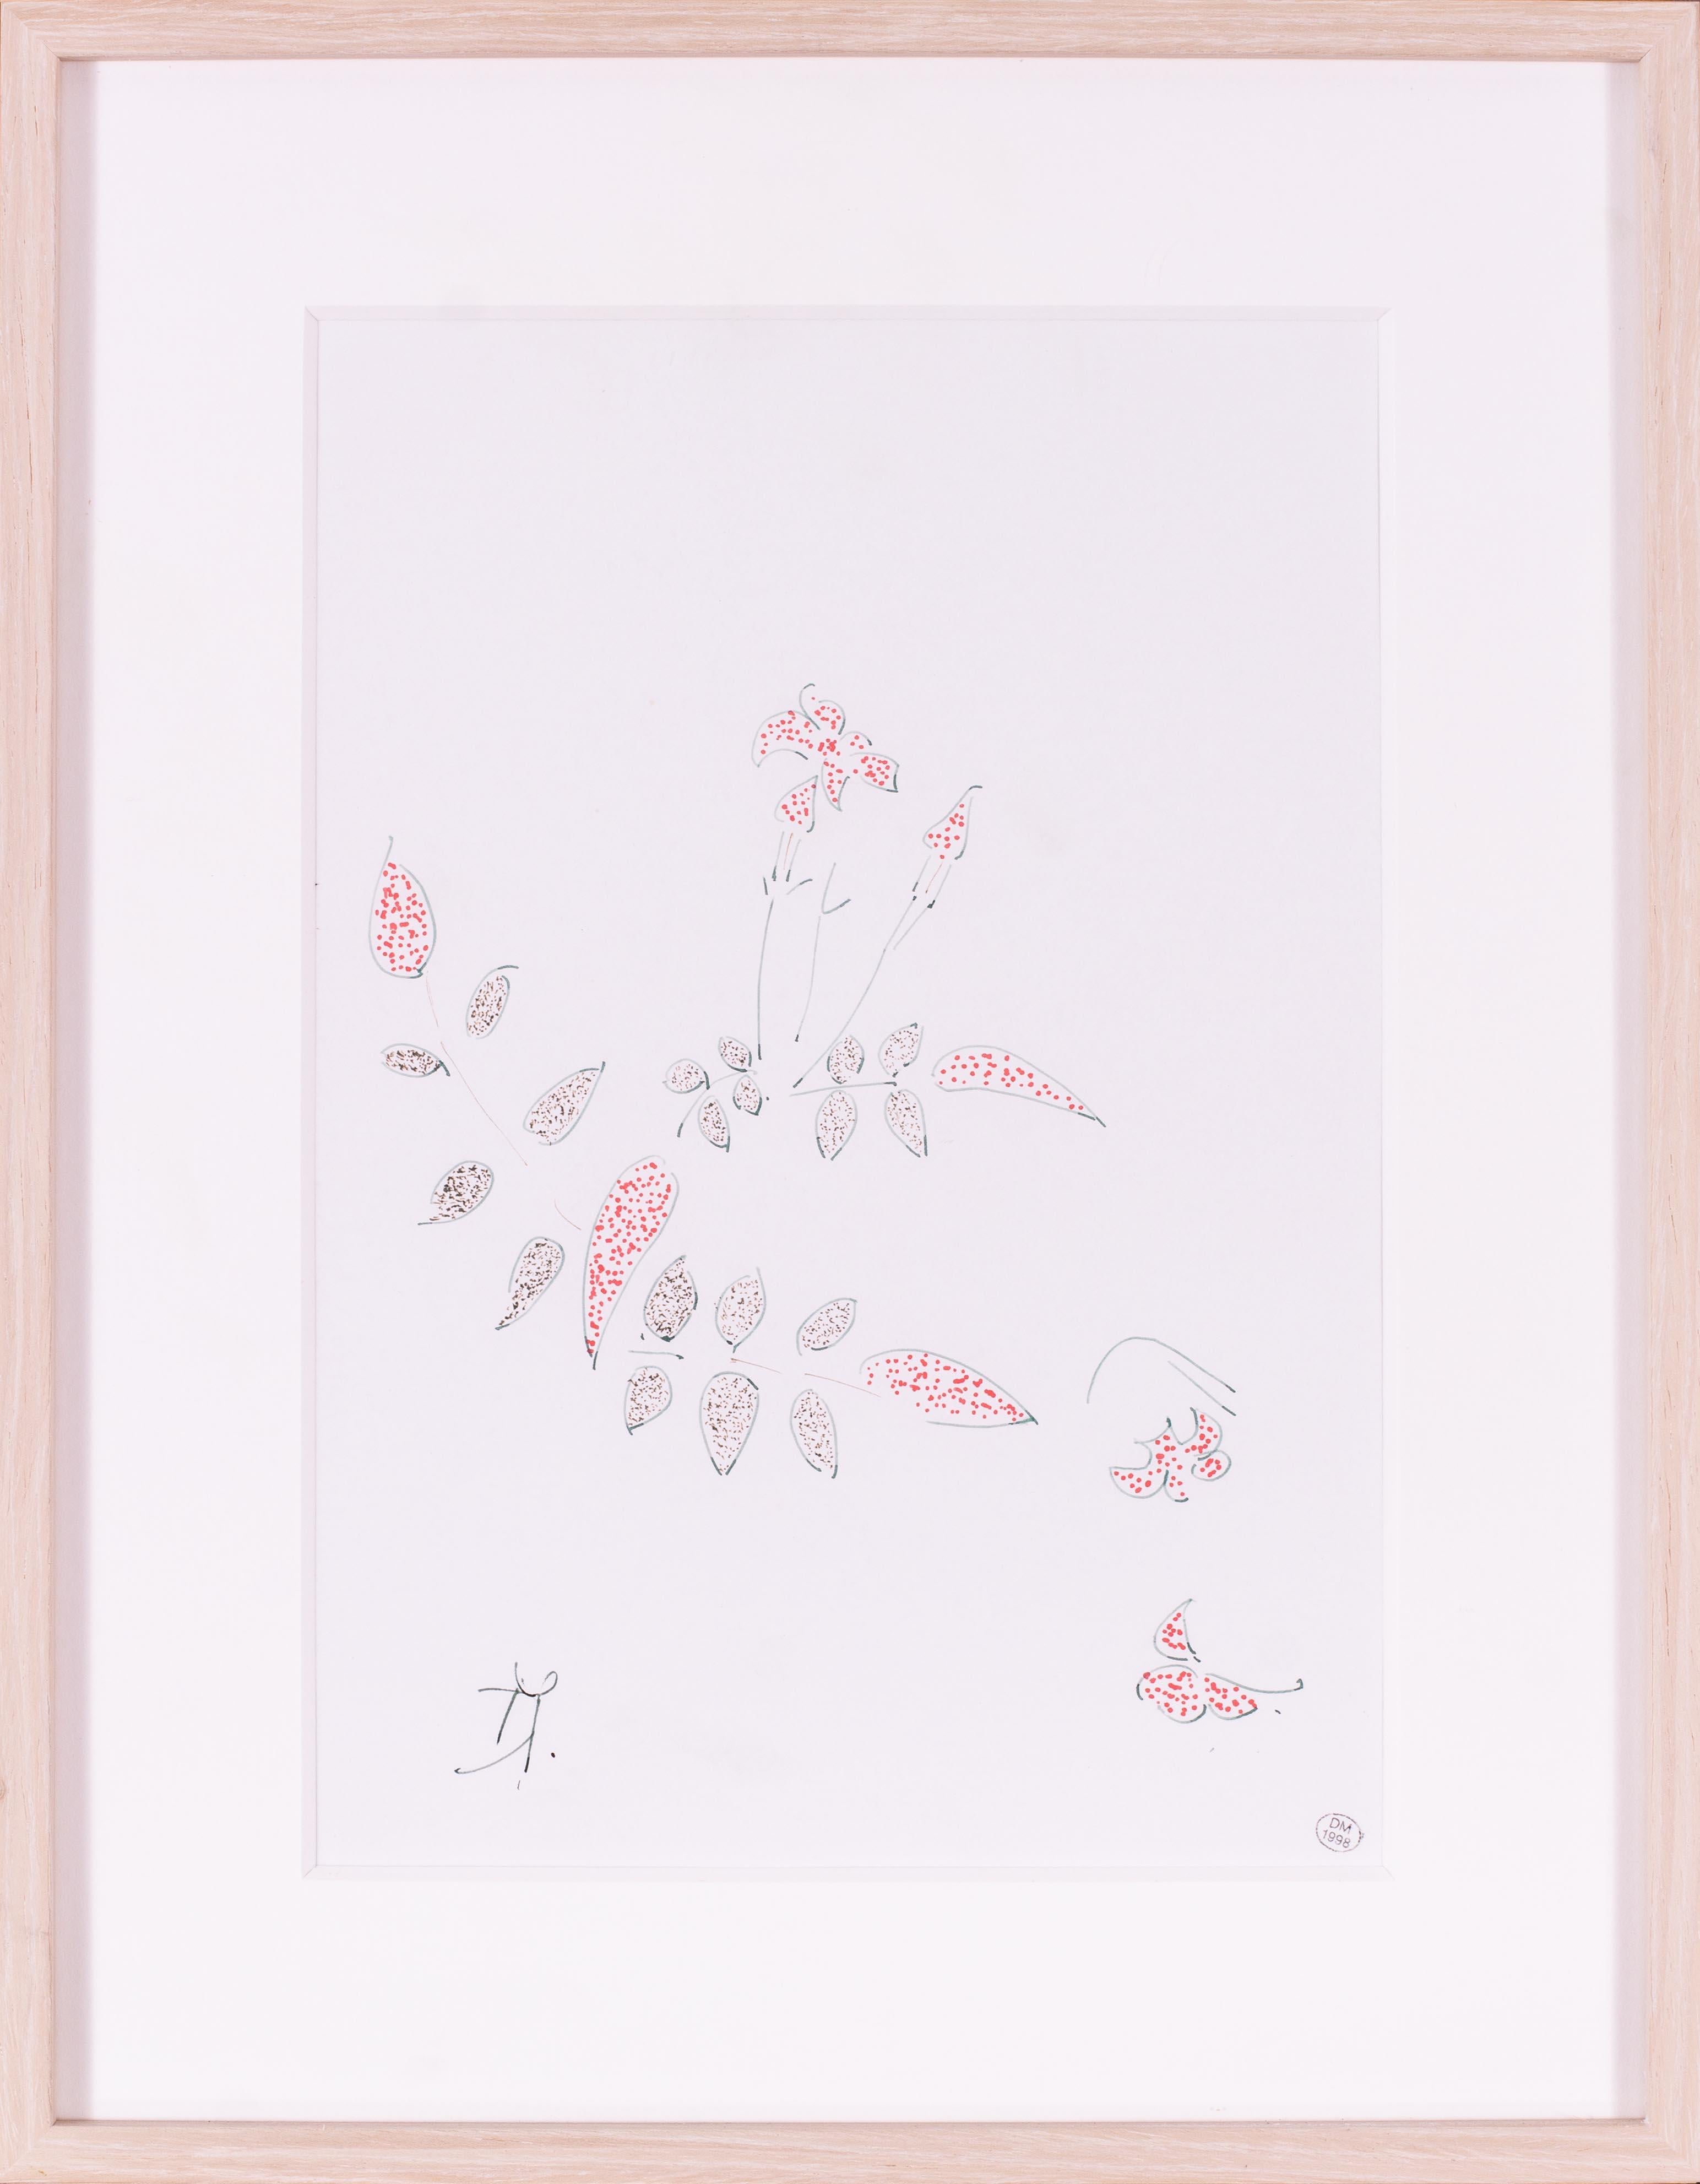 Es handelt sich um eine schöne, avantgardistische Zeichnung von Blumen der französischen Künstlerin Dora Maar.  Dora Maar war eine eigenständige Künstlerin, die sich durch eindrucksvolle Fotografien, innovative Techniken und die konsequente